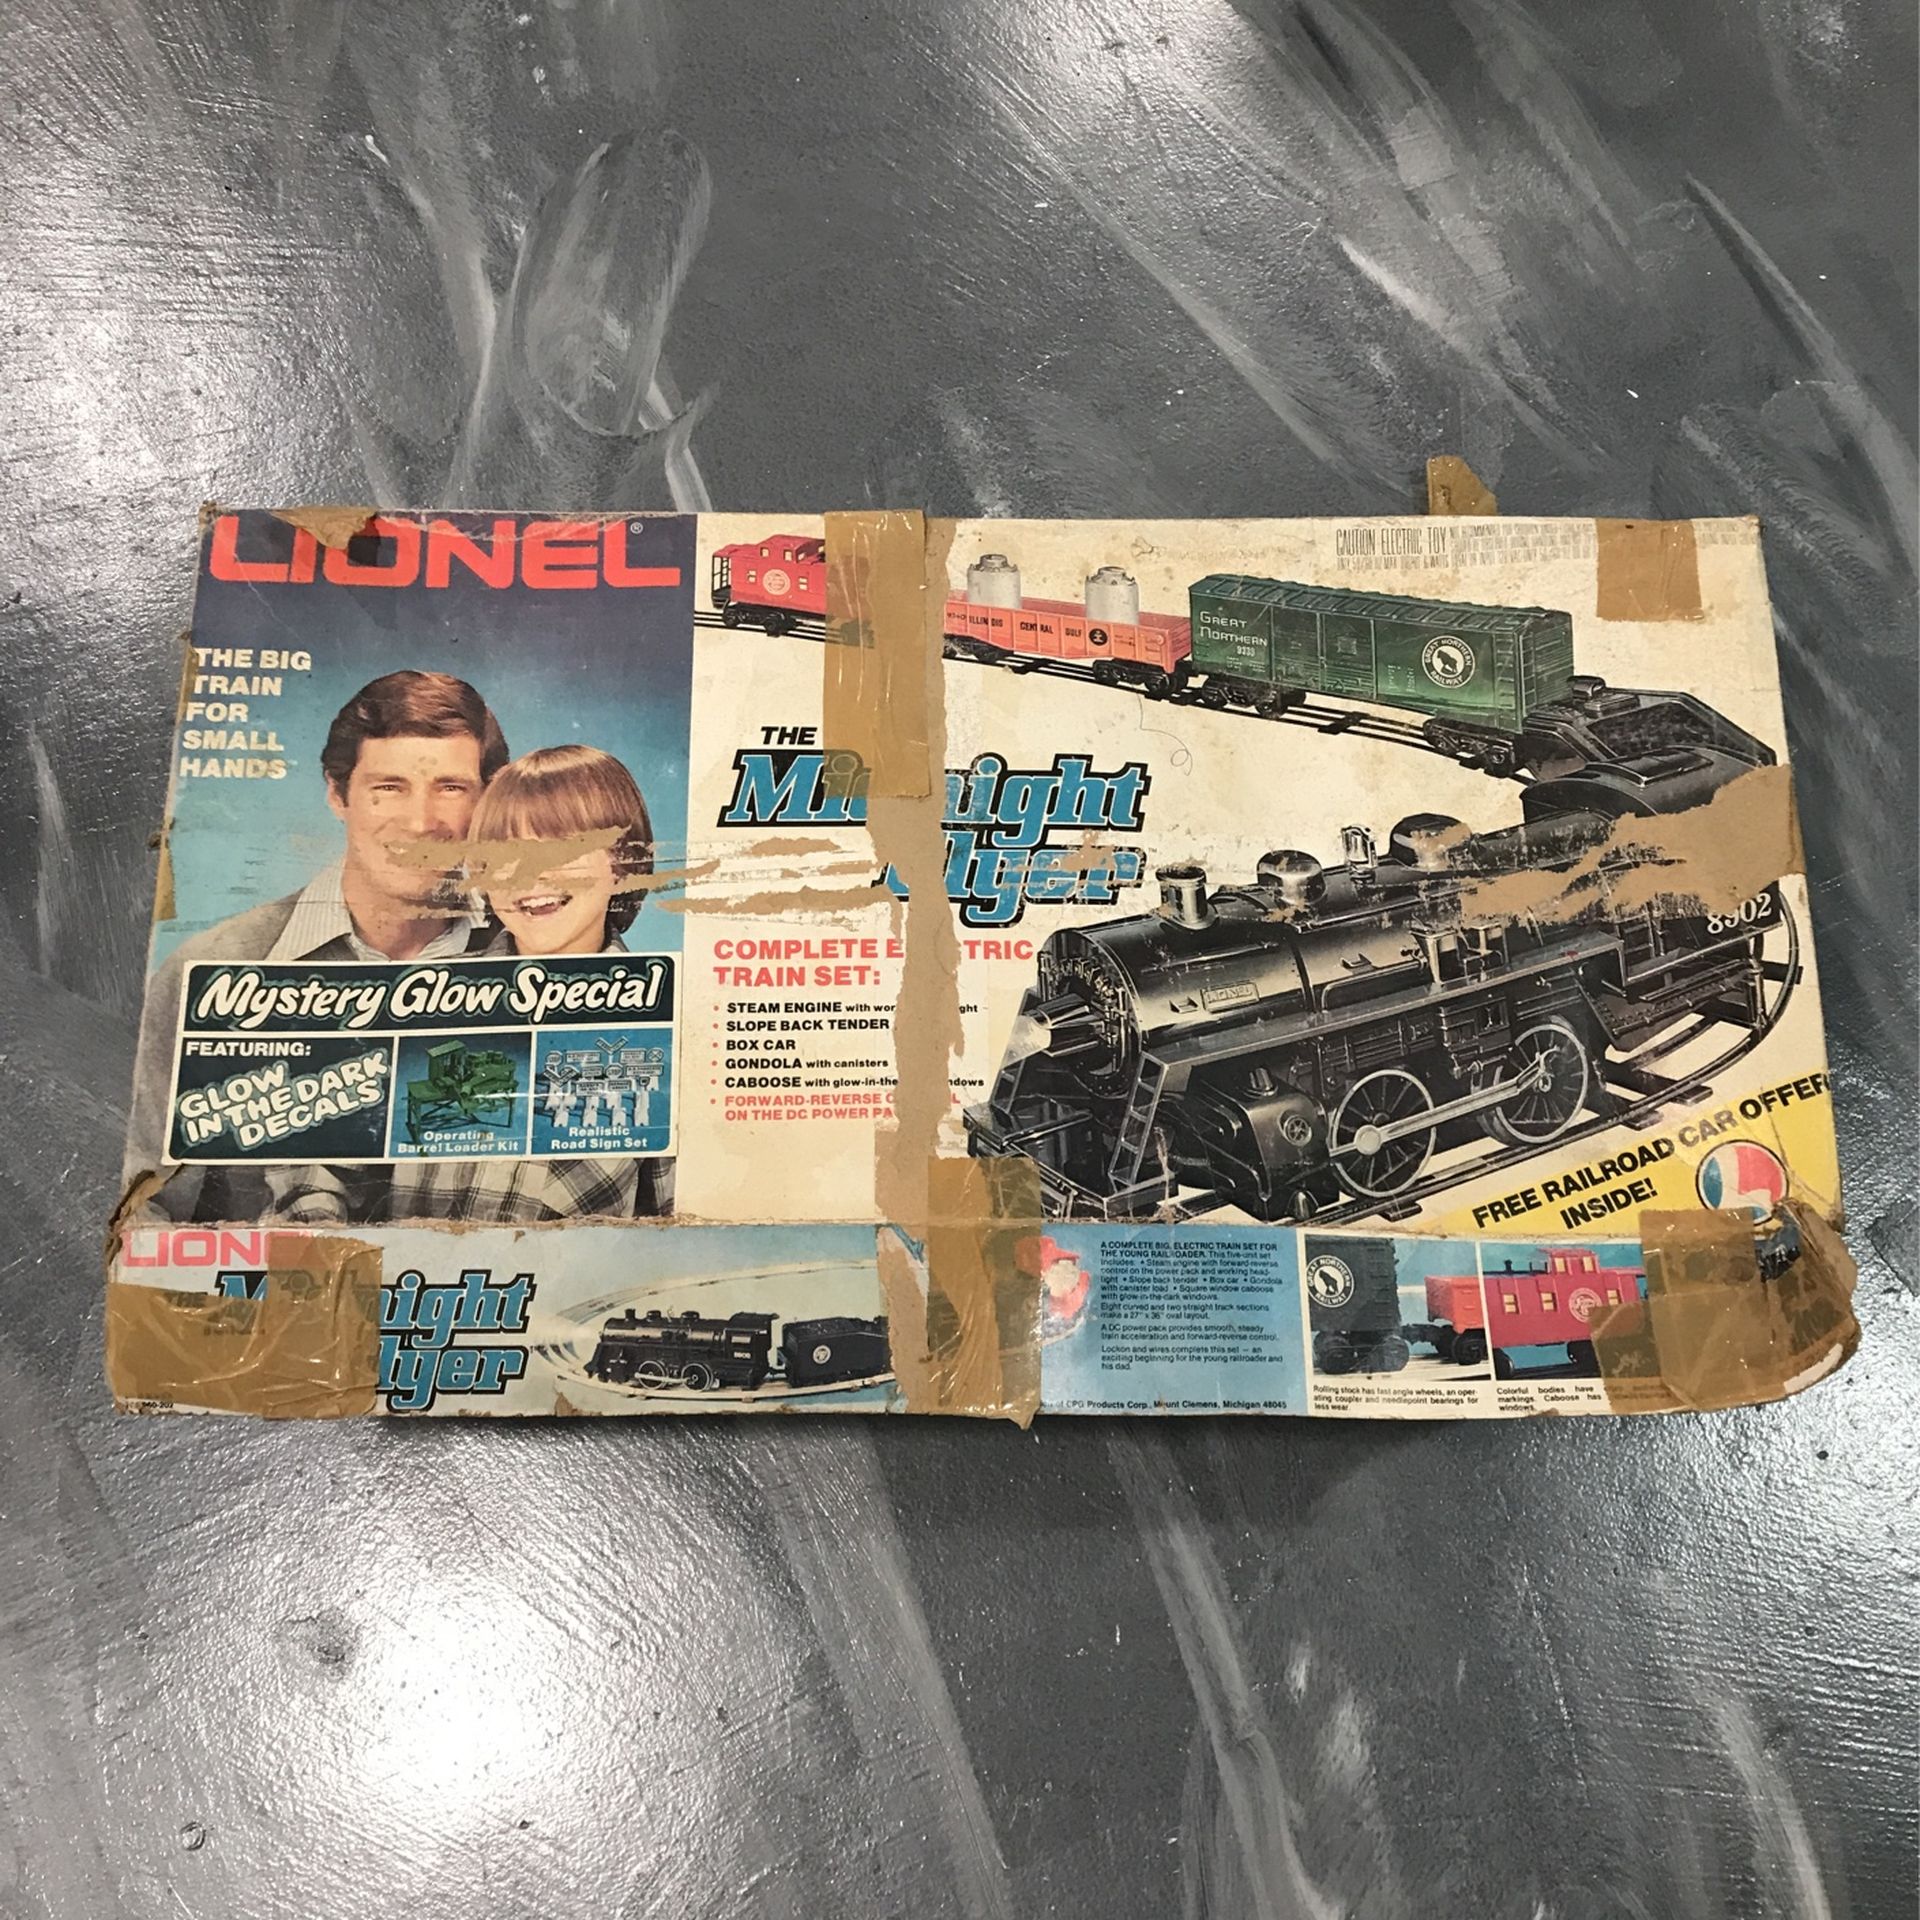 Circa 1980 Lionel Train Set